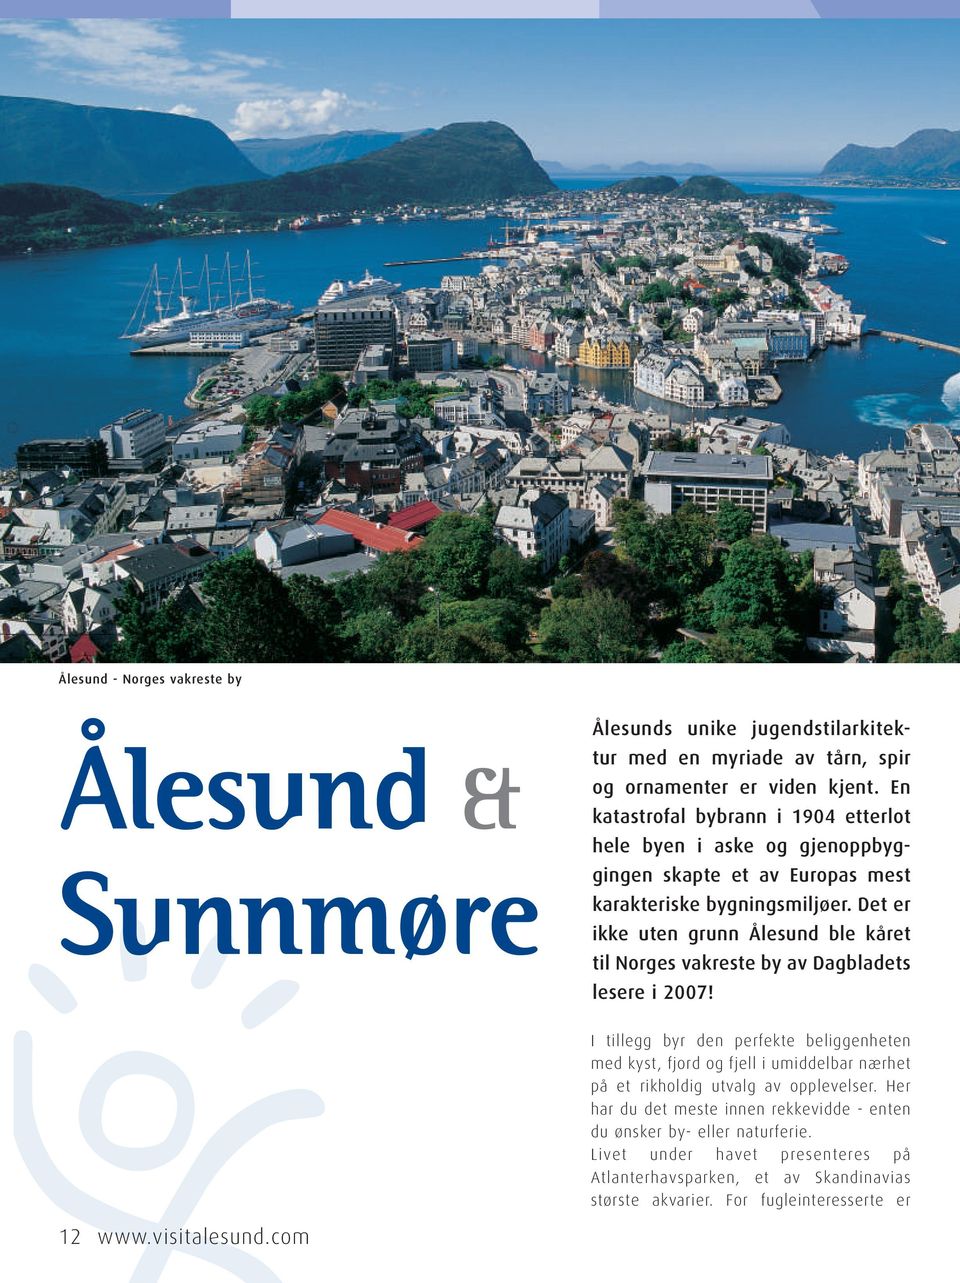 Det er ikke uten grunn Ålesund ble kåret til Norges vakreste by av Dagbladets lesere i 2007!